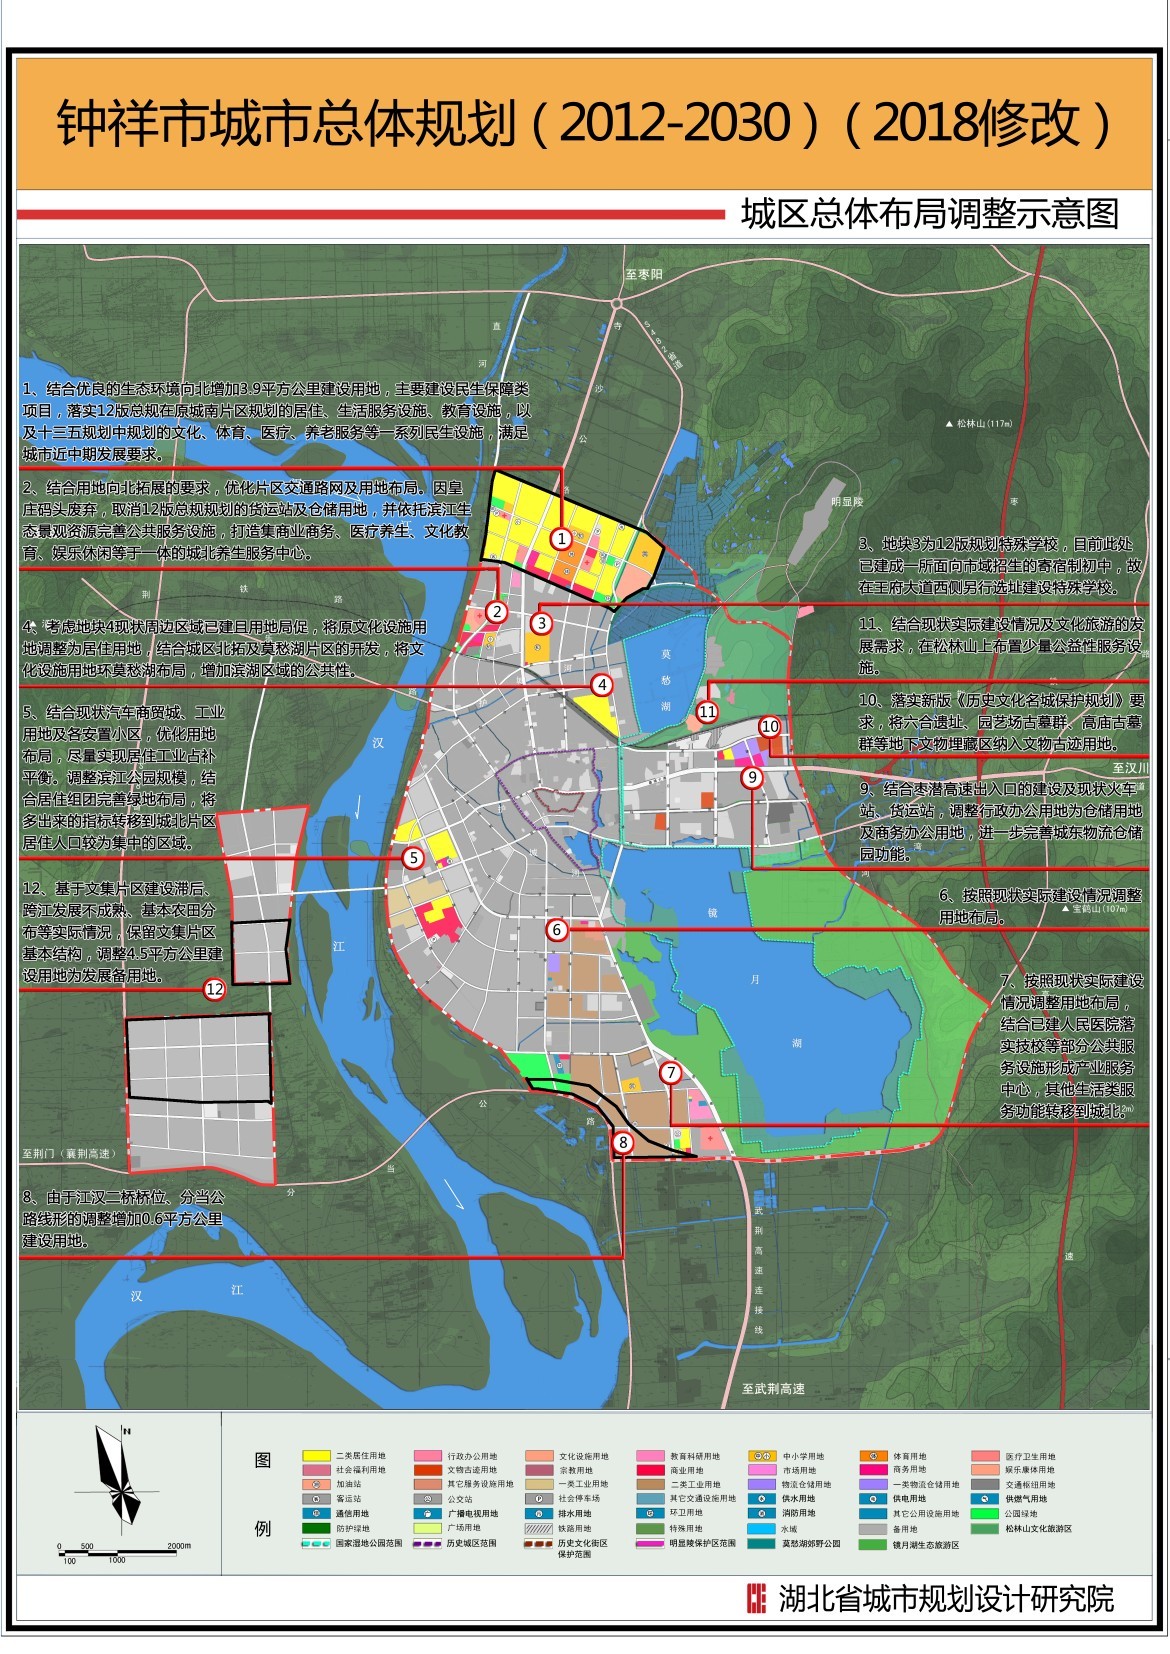 《钟祥市城市总体规划(2012-2030)(2018修改)》规划公示